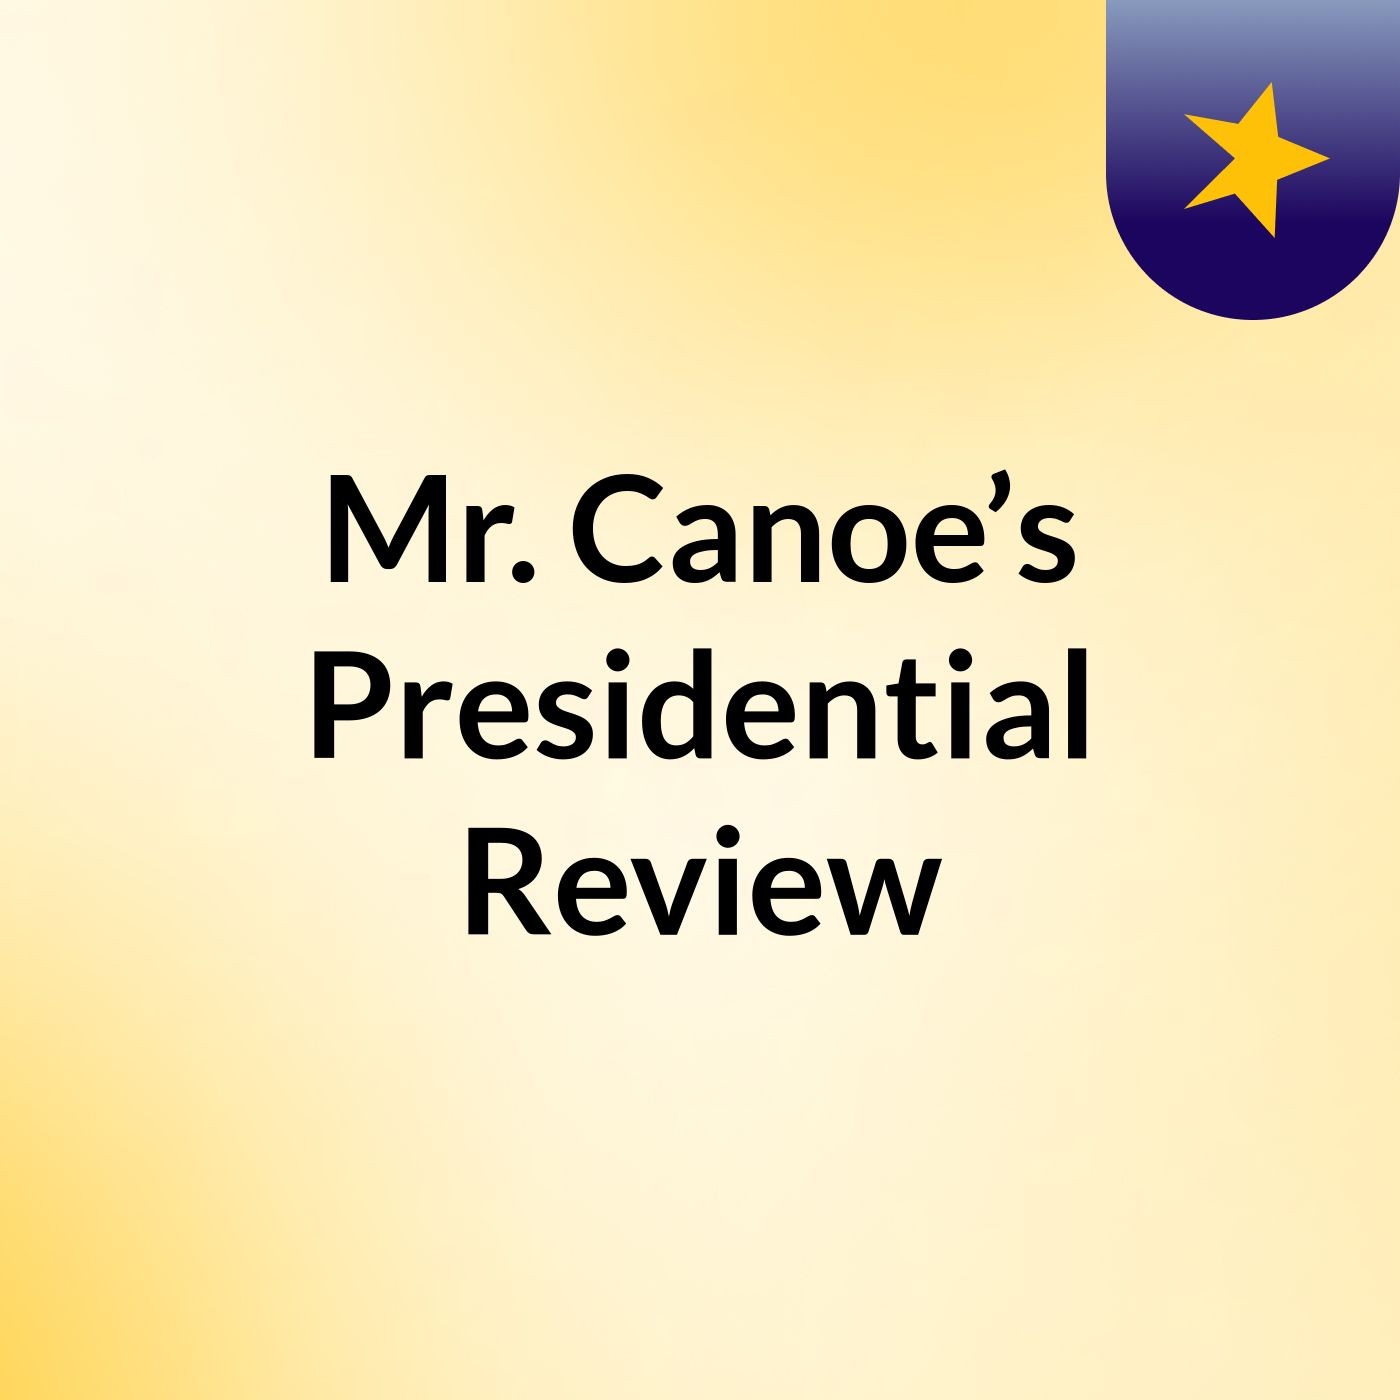 Mr. Canoe’s Presidential Review